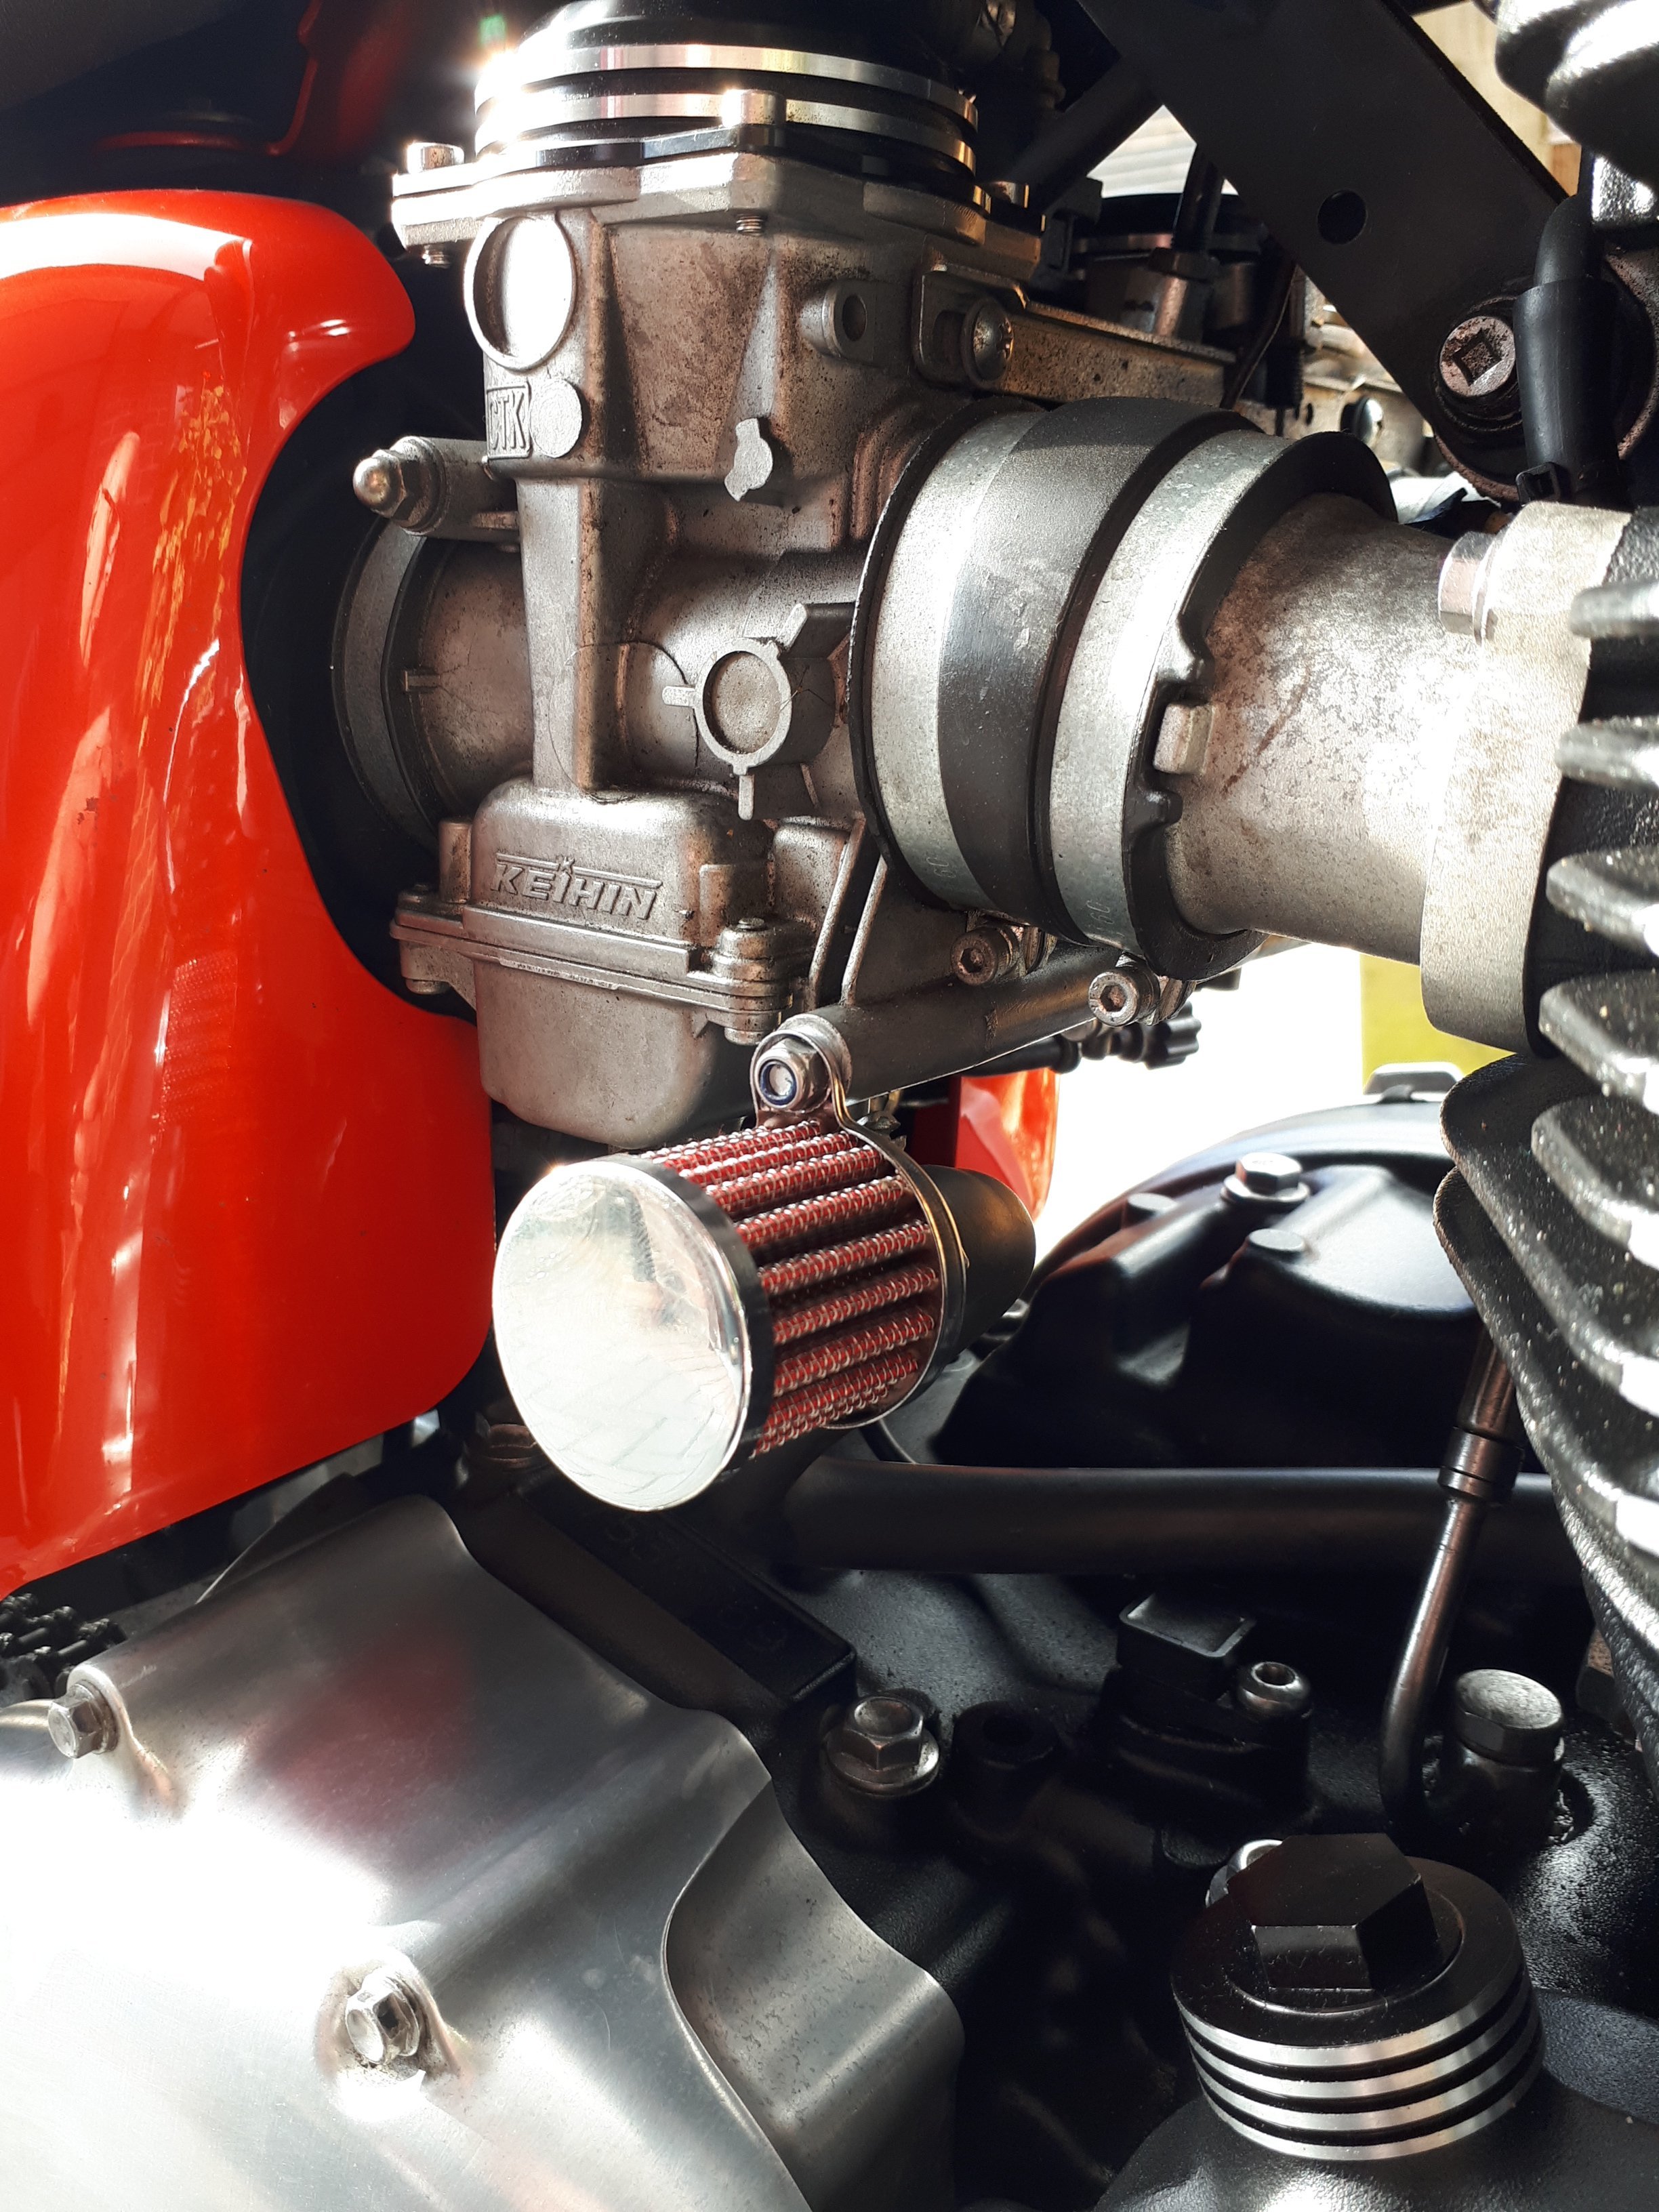 DNA Crankcase Breather Oil Filter for Triumph Motorbikes